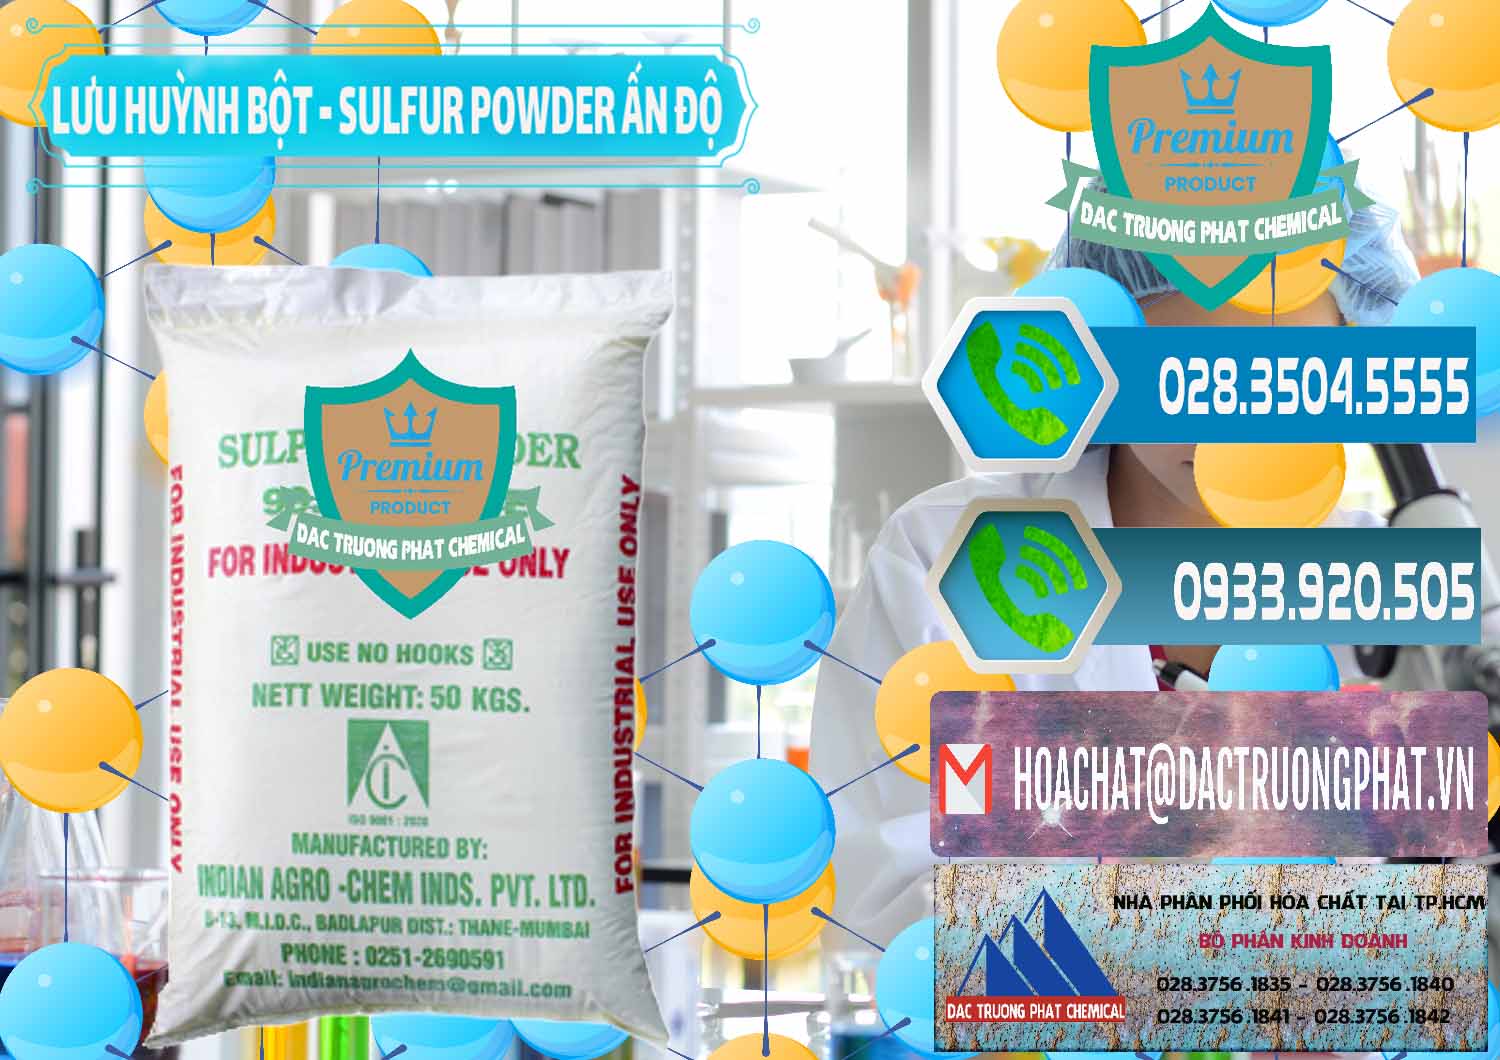 Chuyên phân phối _ bán Lưu huỳnh Bột - Sulfur Powder Ấn Độ India - 0347 - Cty chuyên bán & phân phối hóa chất tại TP.HCM - congtyhoachat.net